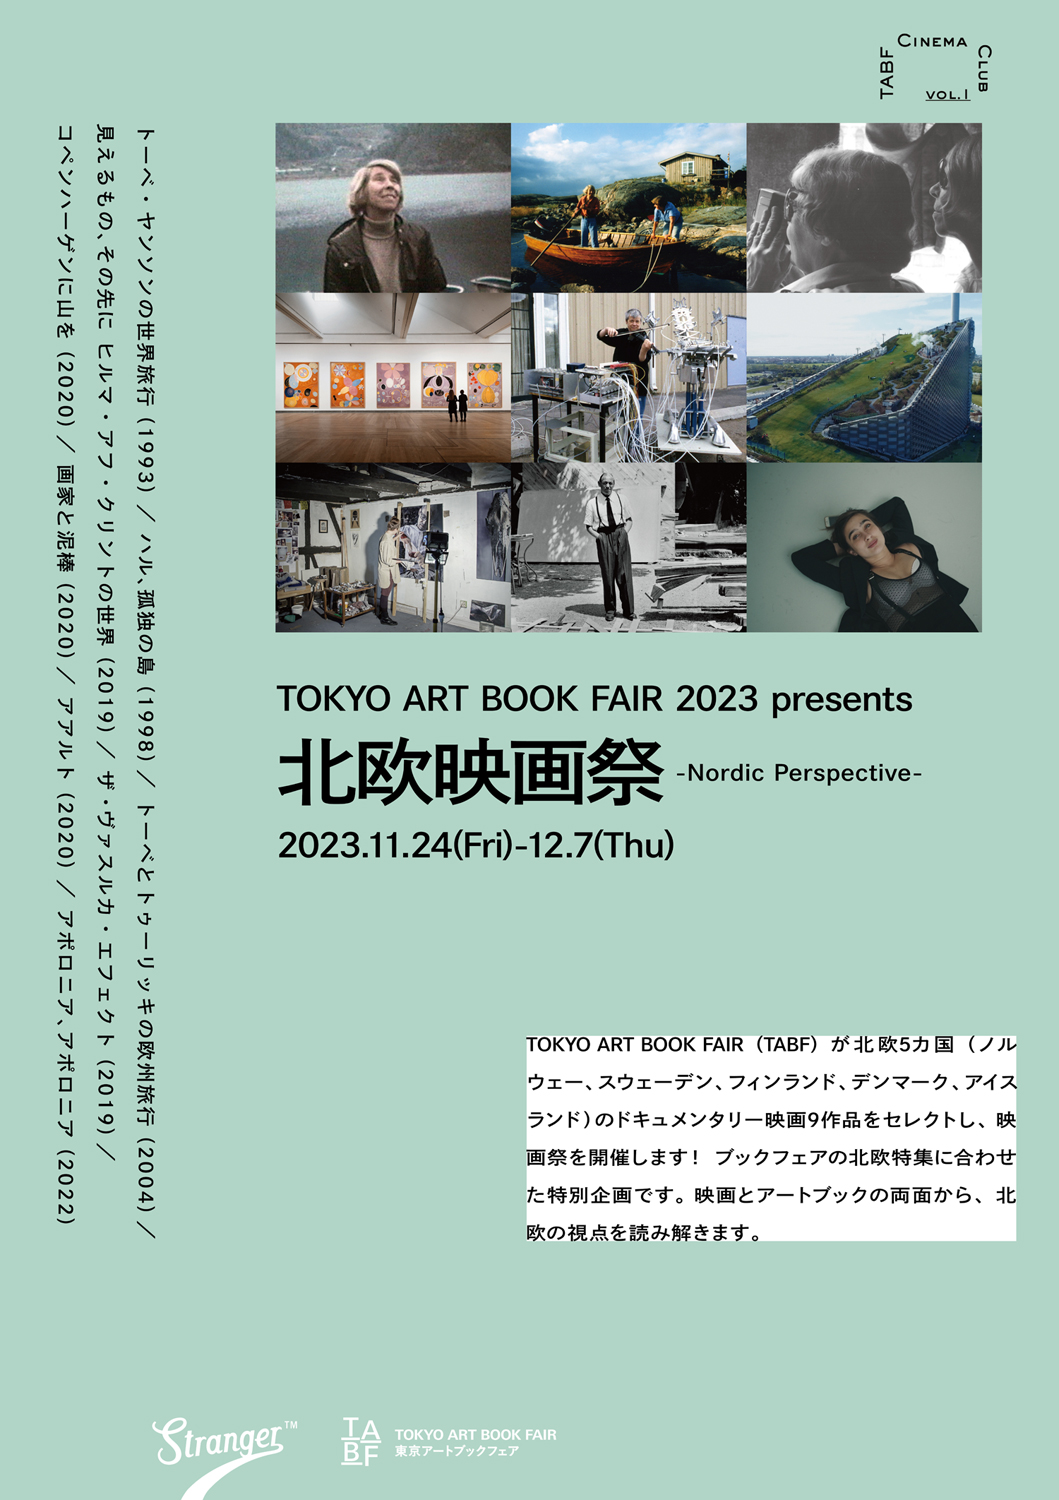 TOKYO ART BOOK FAIR 2023 presents 北欧映画祭 -Nordic Perspective-